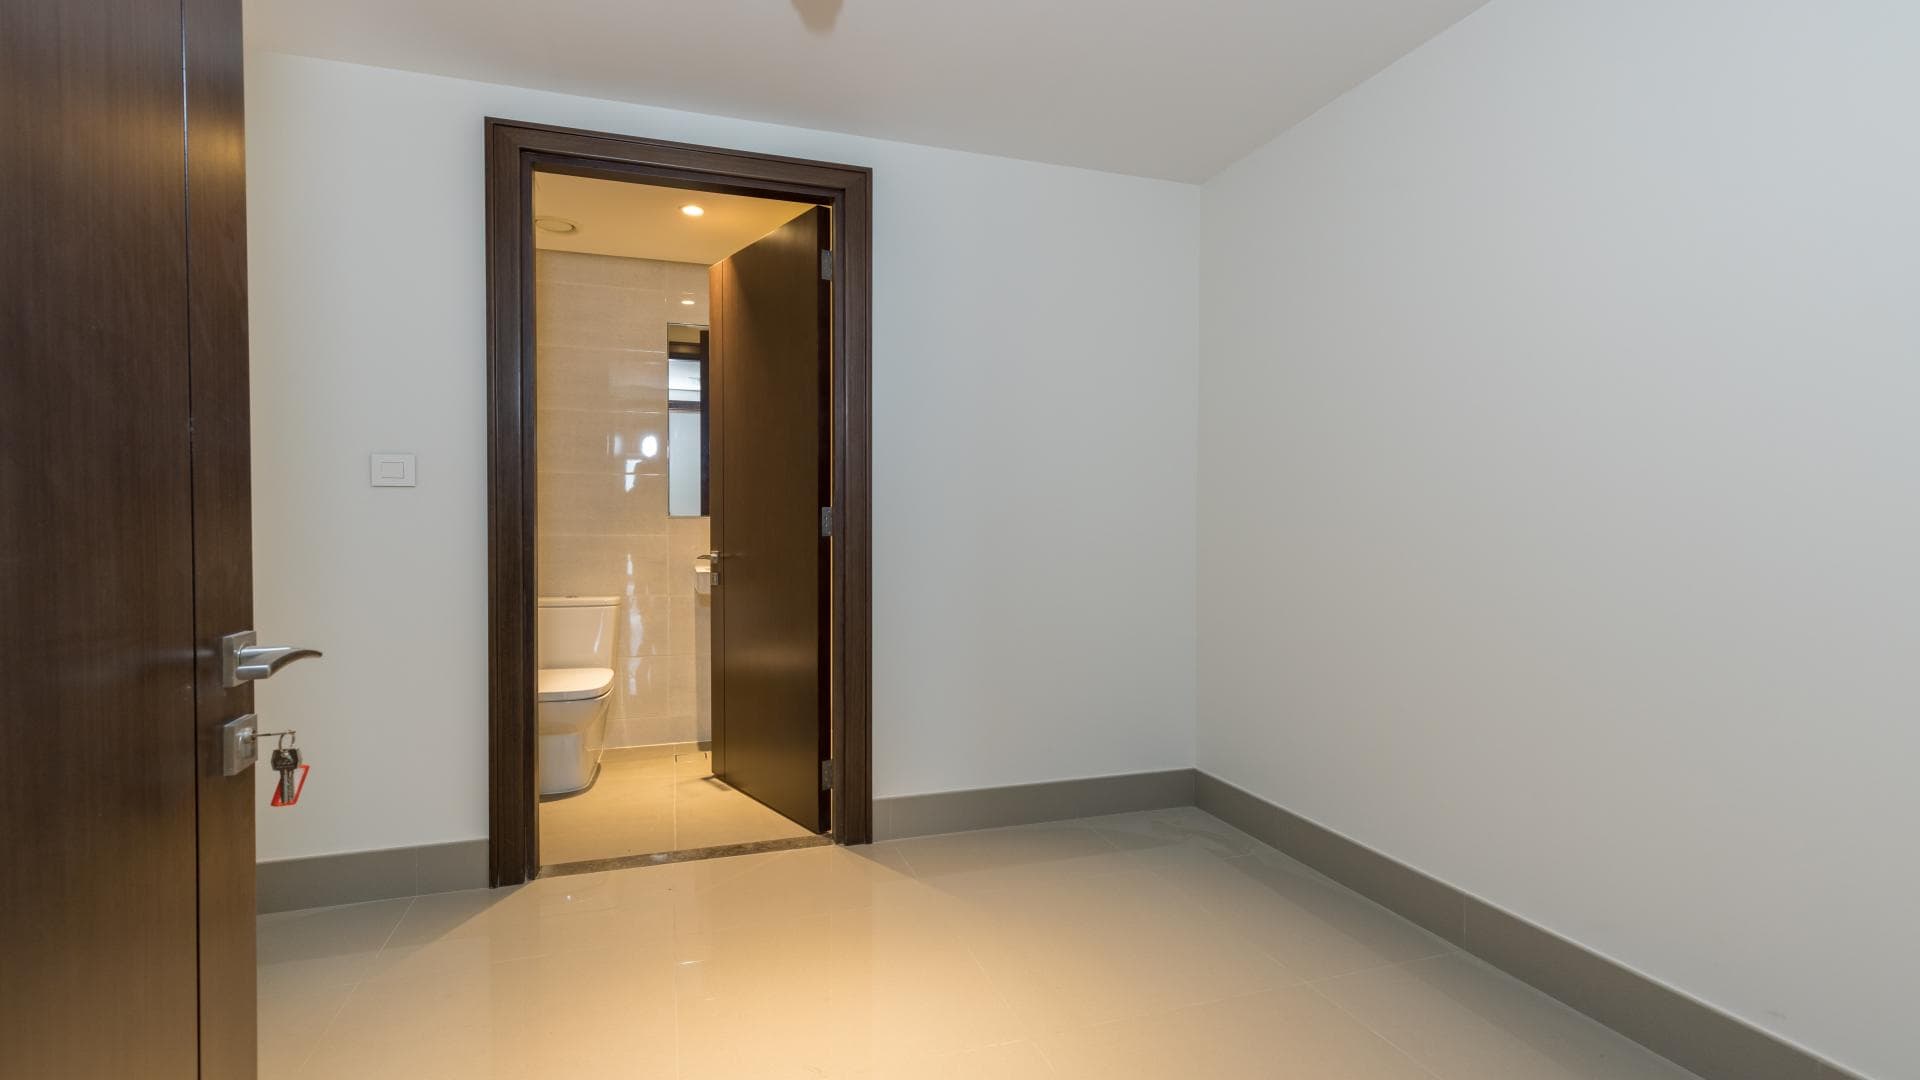 3 Bedroom Apartment For Sale Al Ramth 21 Lp37924 1f1dfc14e7e71400.jpg